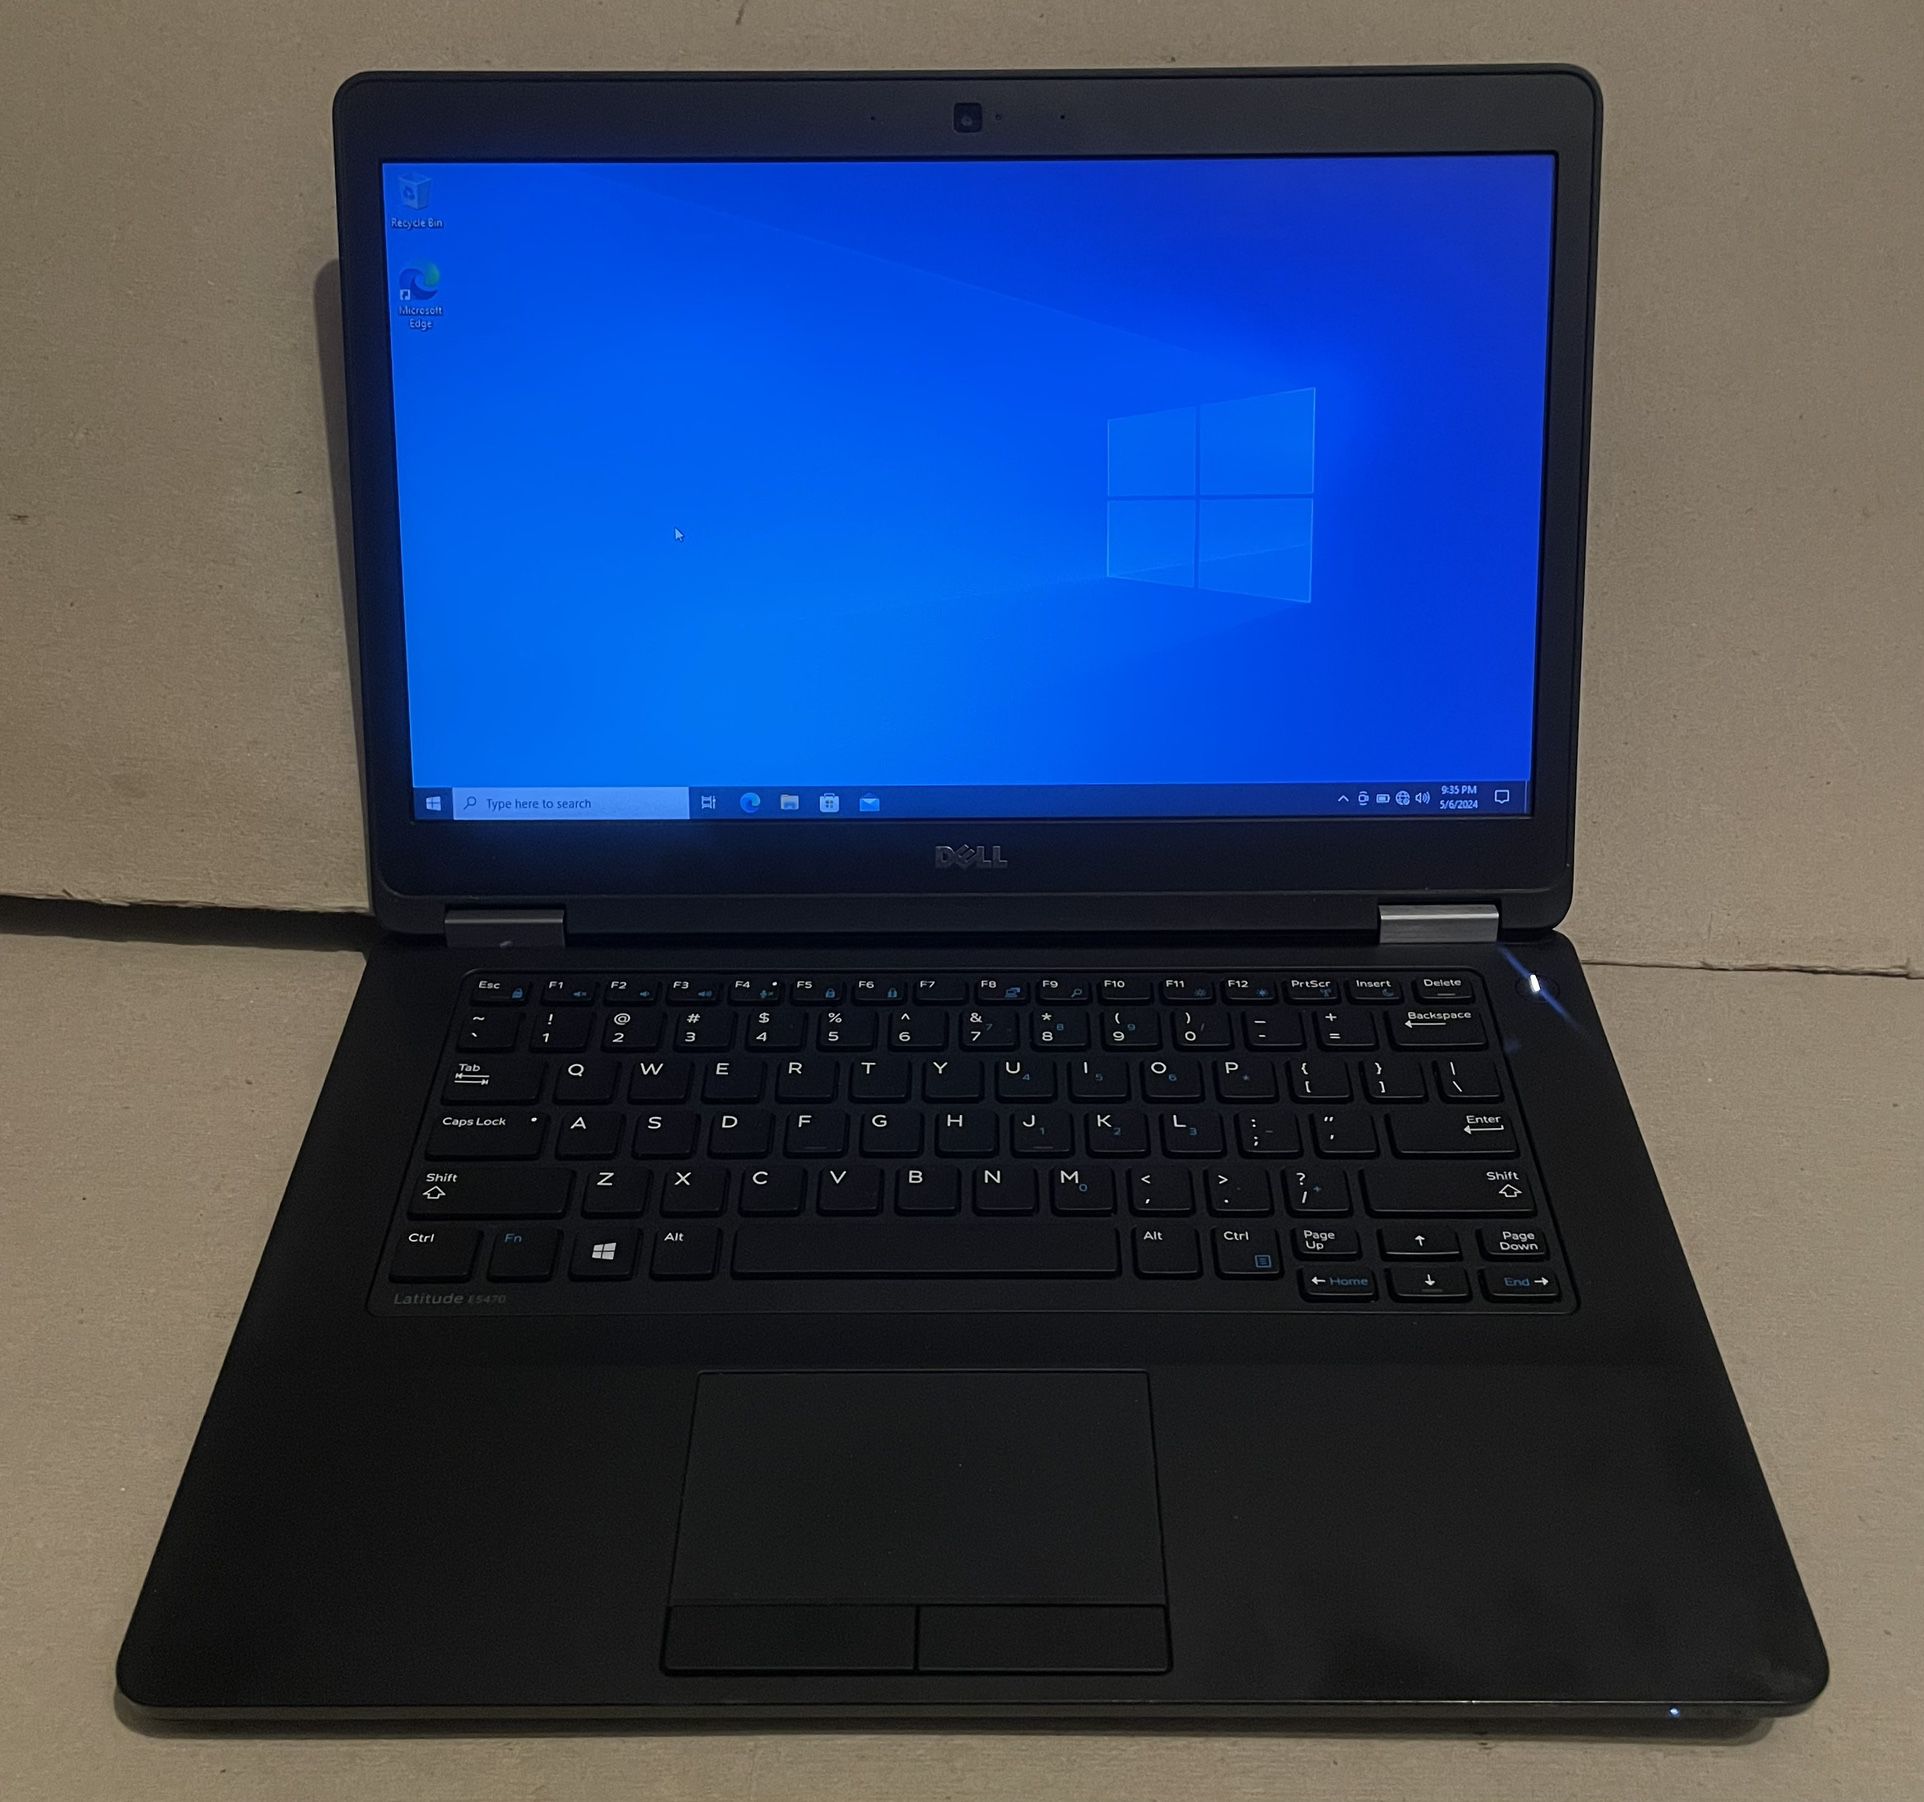 Dell Latitude E5470 Laptop PC